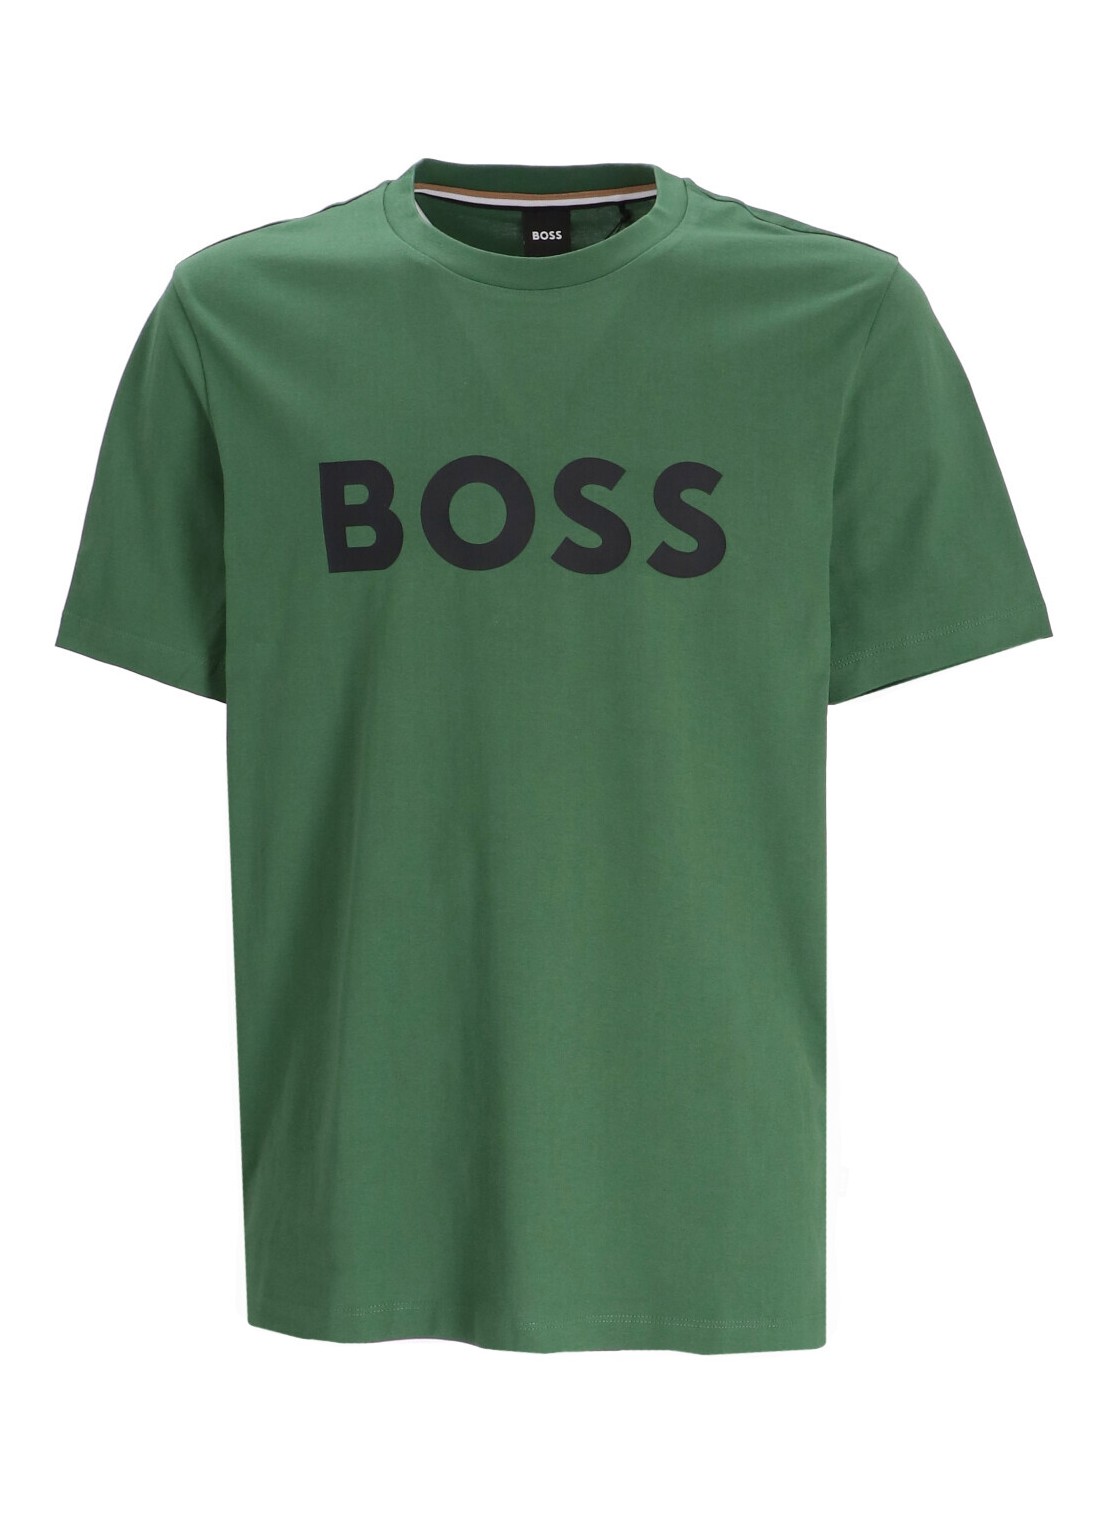 Camiseta boss t-shirt man tiburt 354 50495742 348 talla M
 